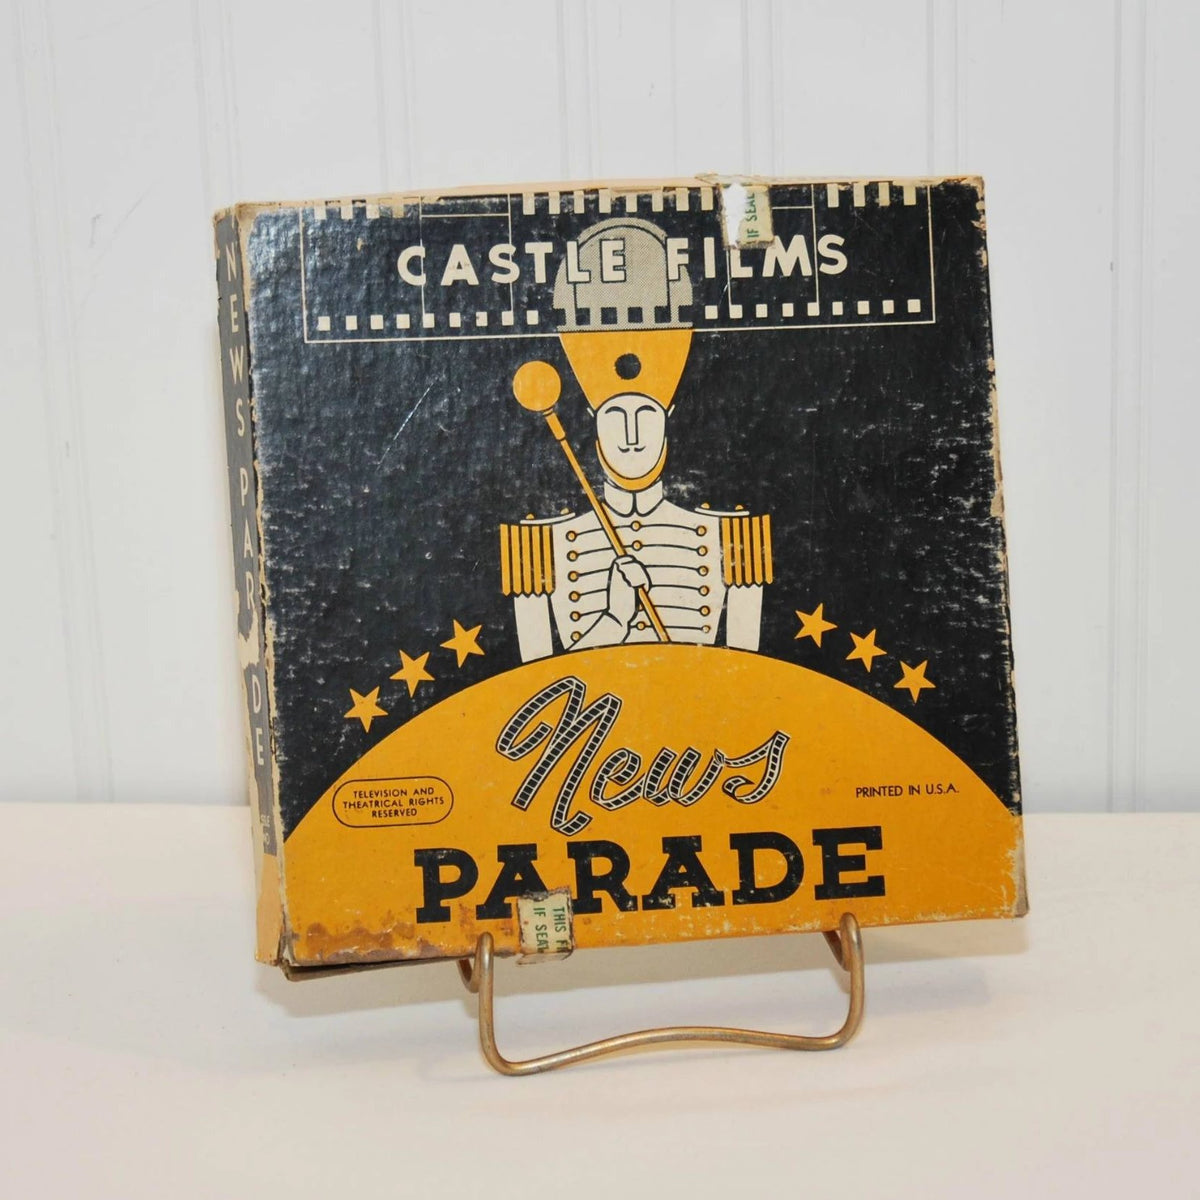 Vintage Castle Films News Parade 16mm Film and Reel (c. 1956